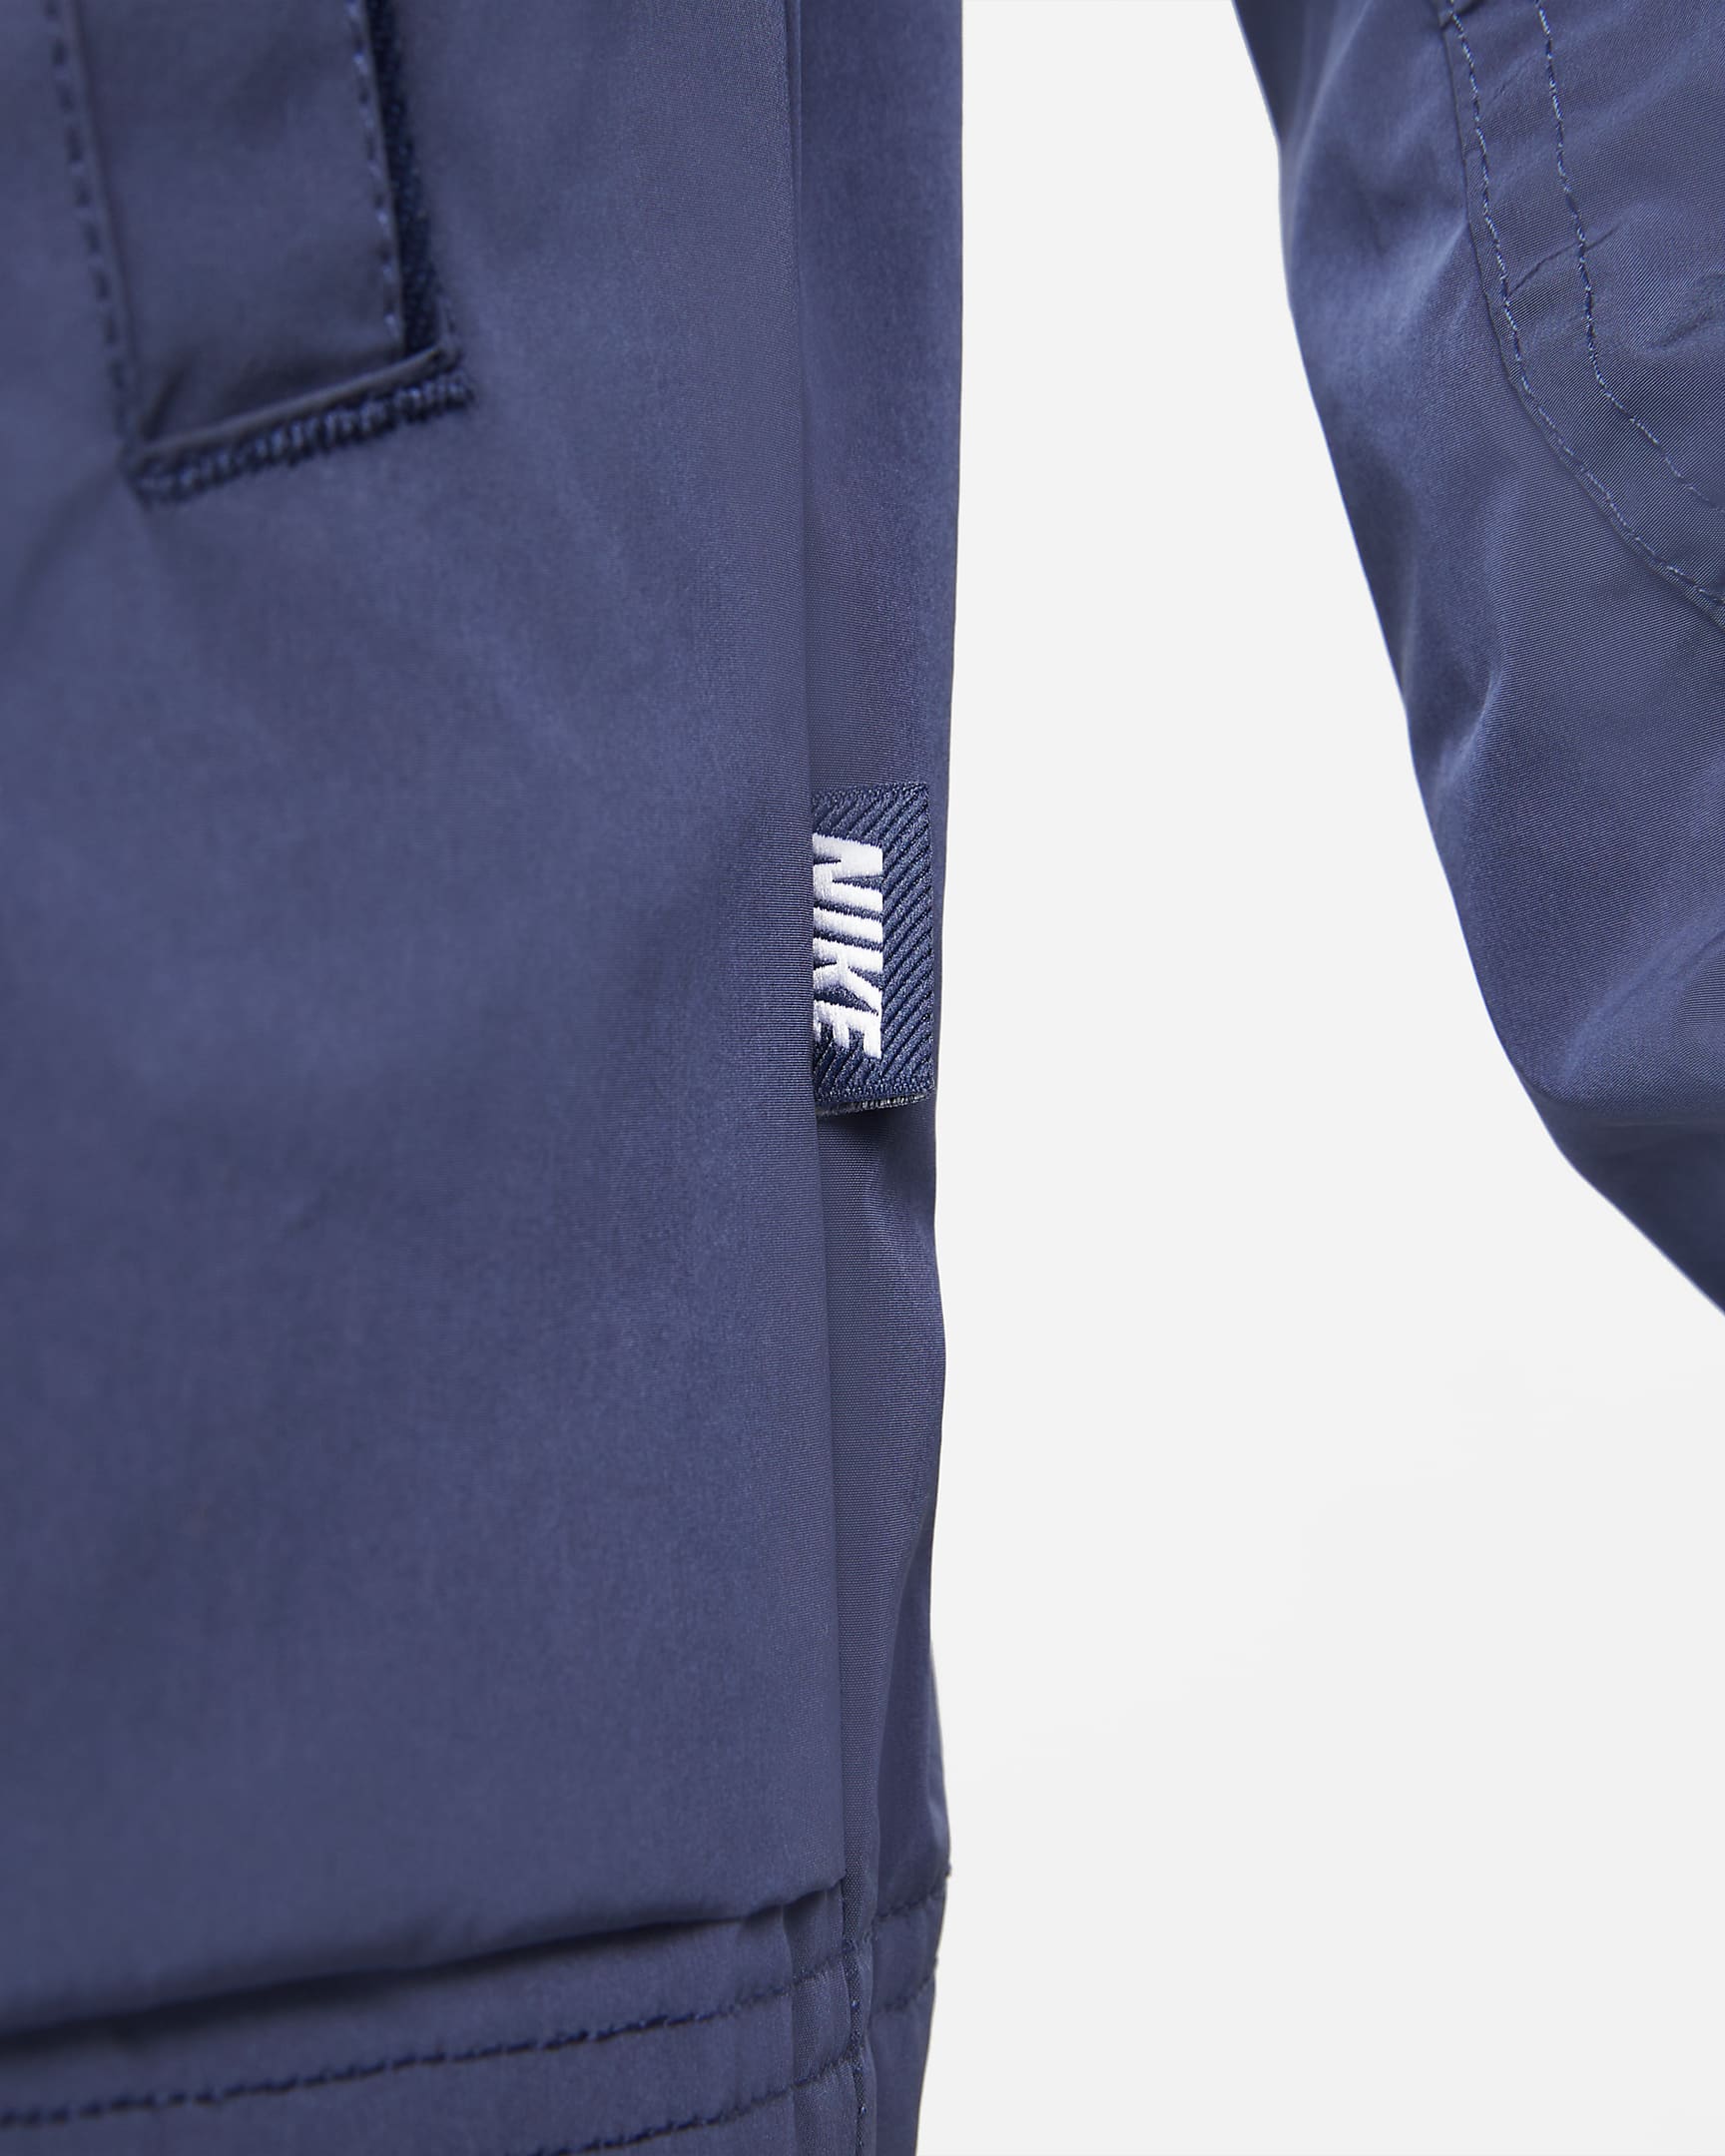 Nike Sportswear Style Essentials Men's Lined Bomber Jacket